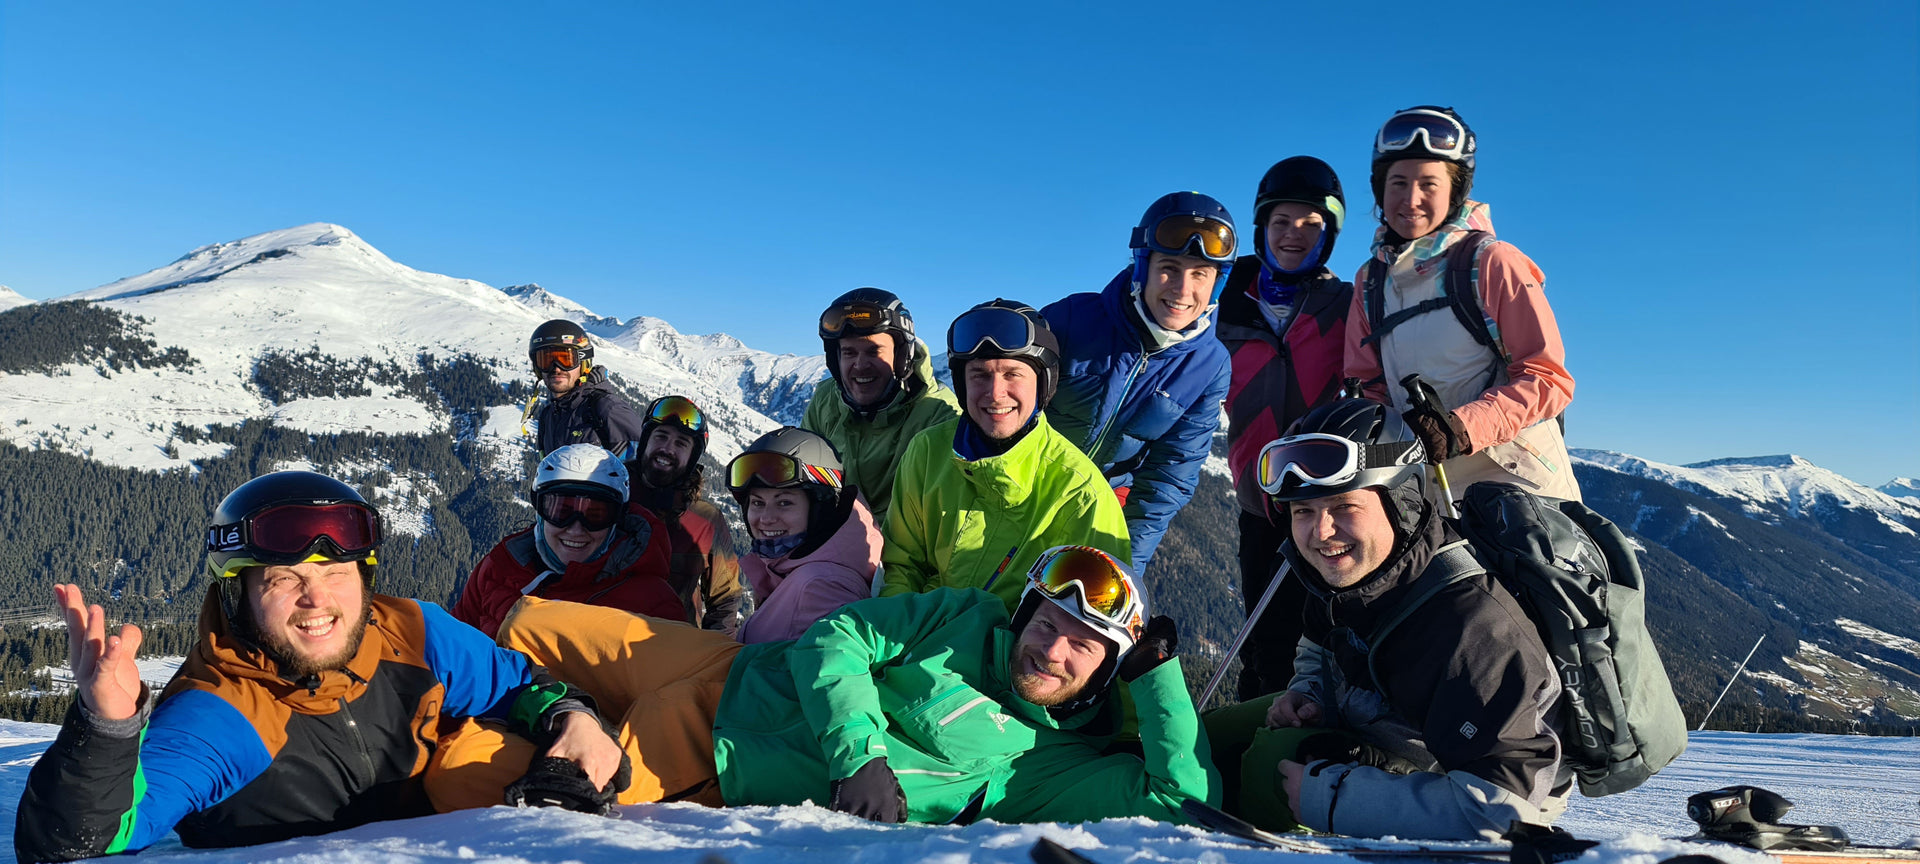 silvester gruppenreise alpen